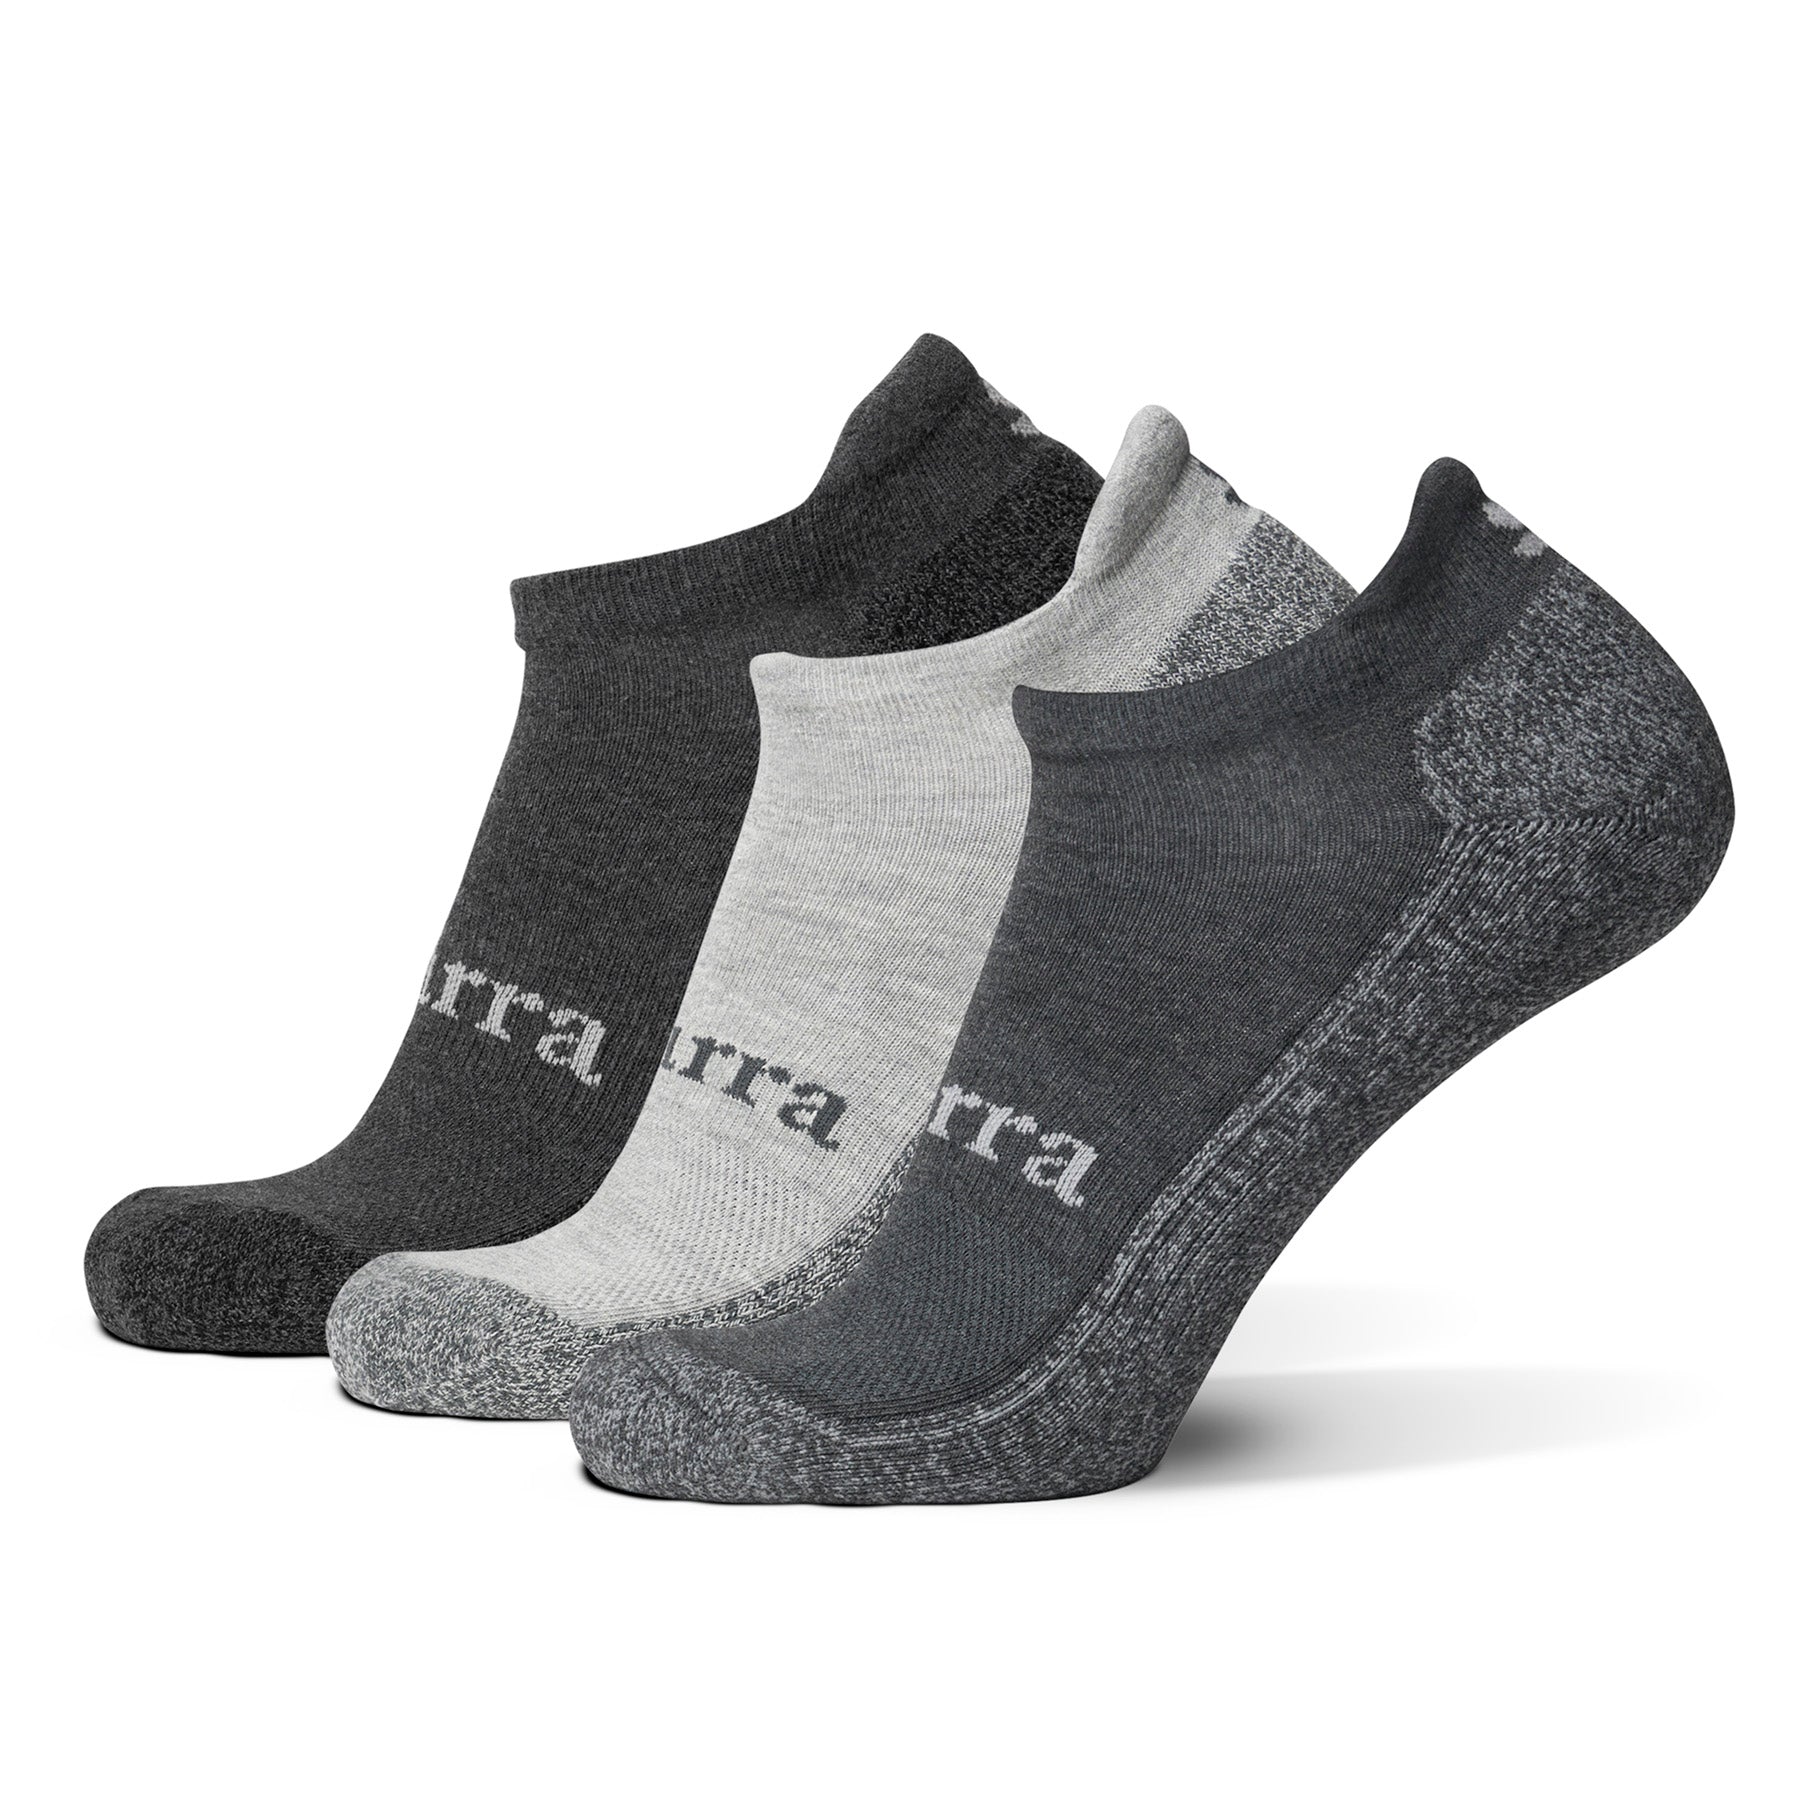 Men's Low Cut Socks [3 Pack]